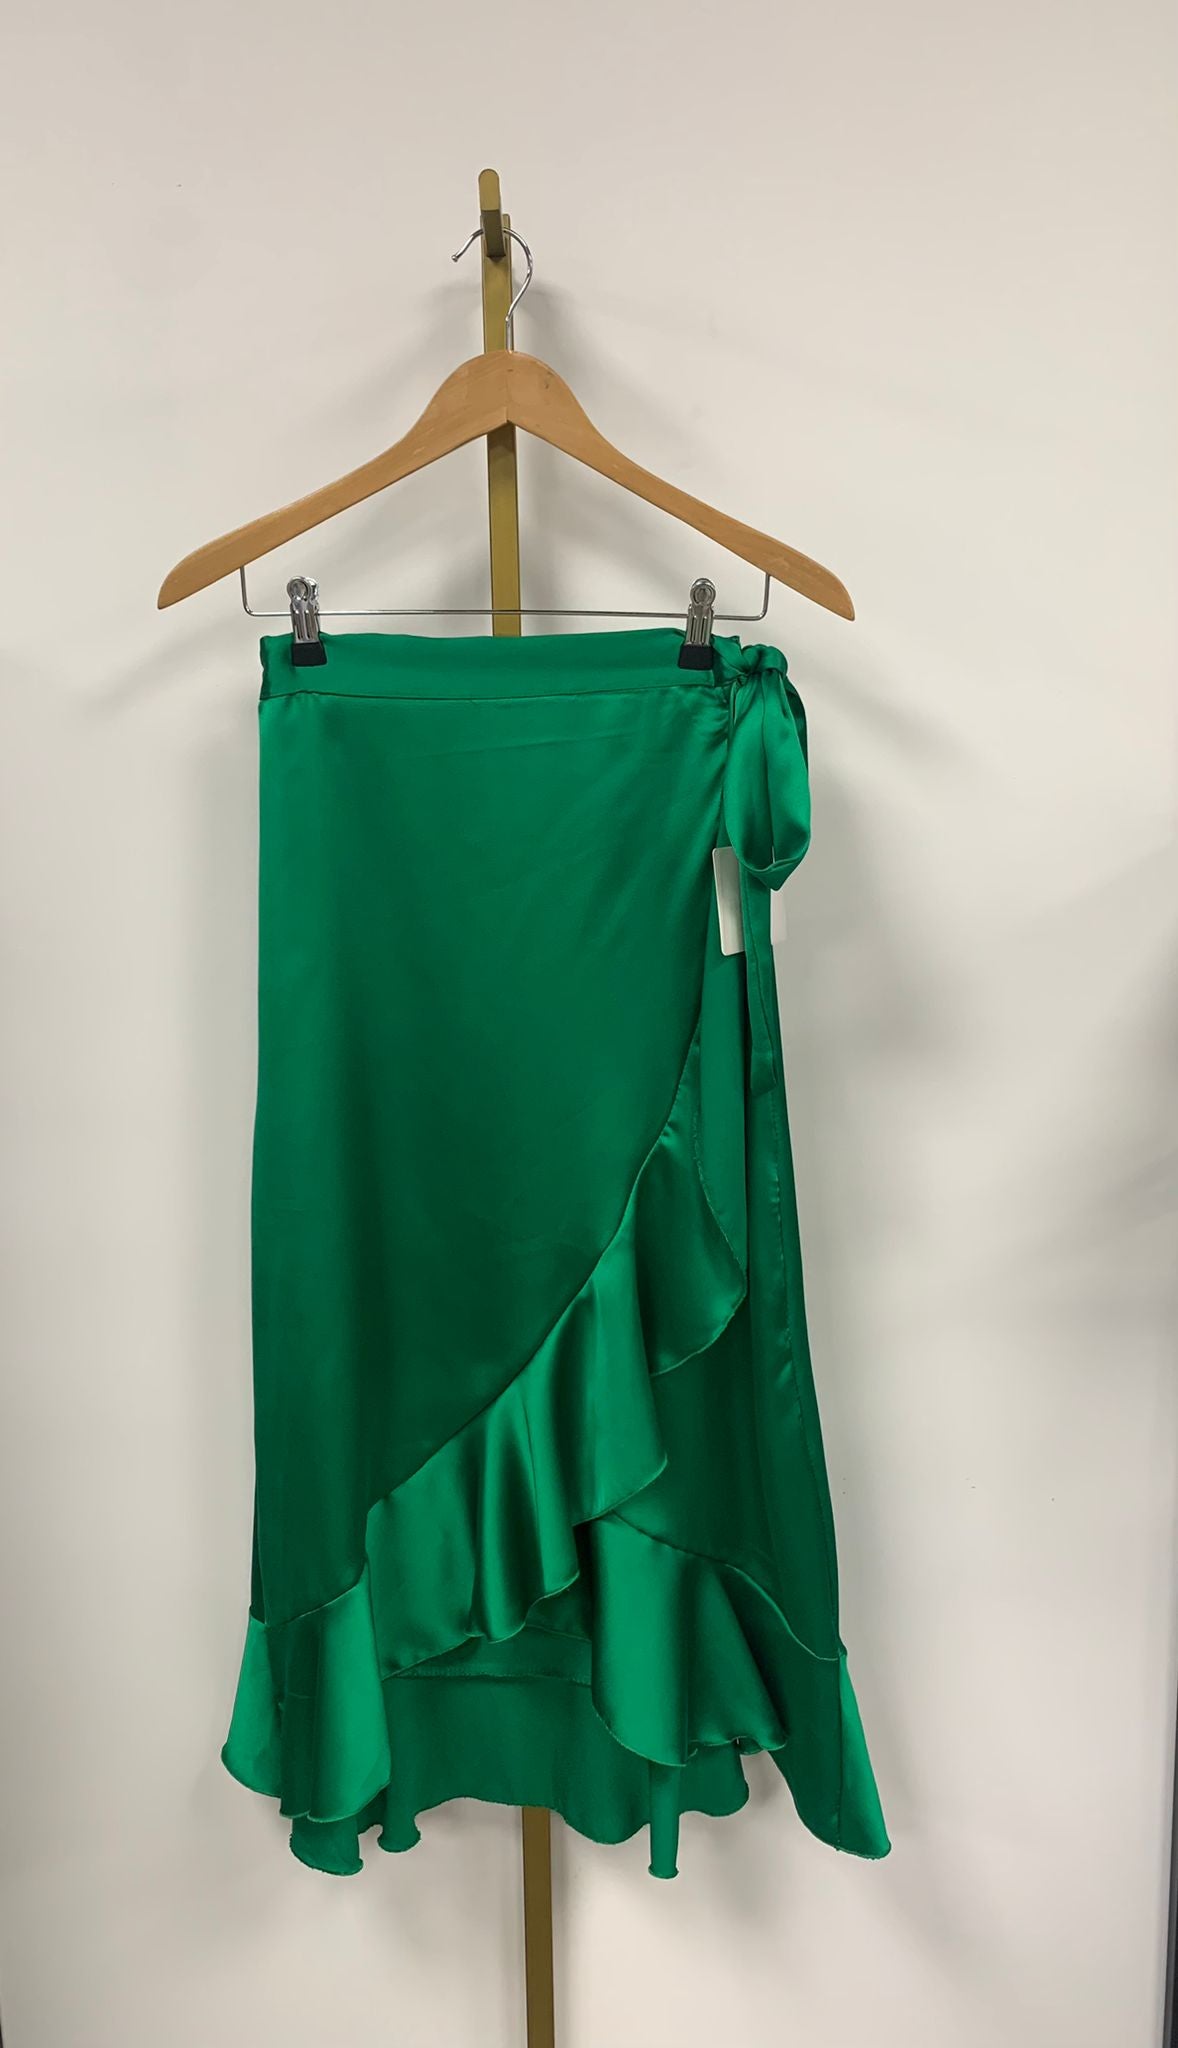 Skirt satin overslag H-2340-R3 Groen